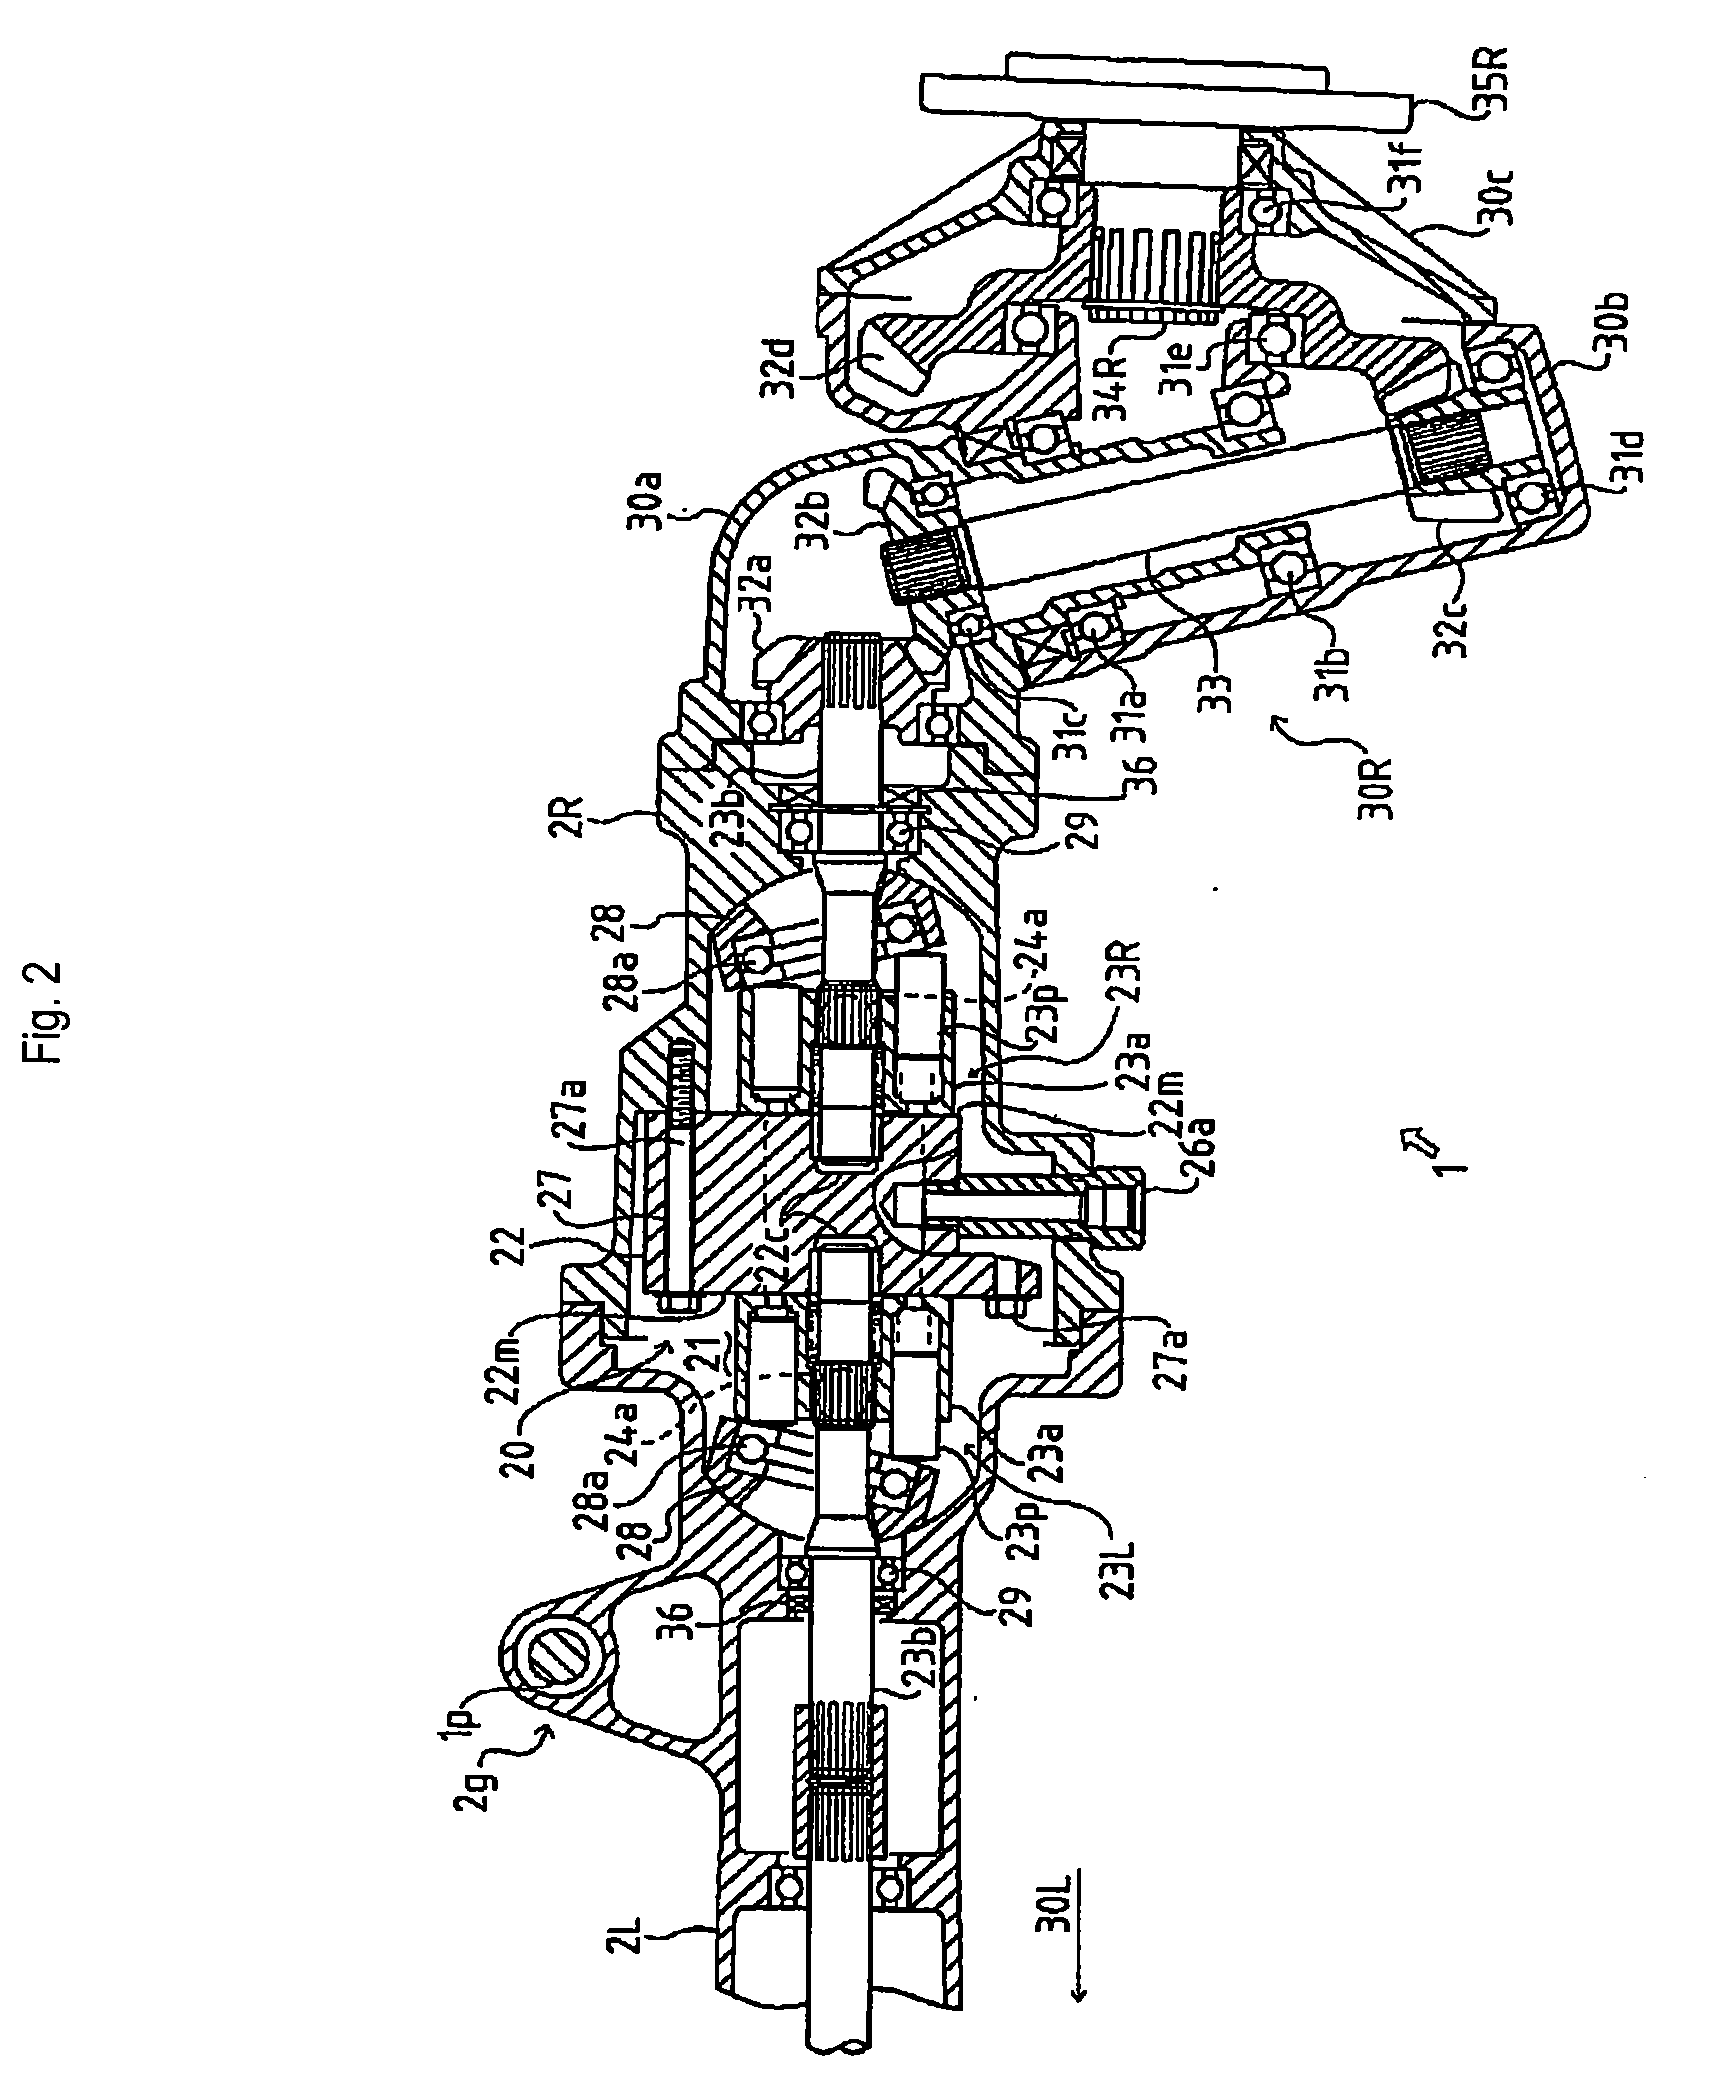 Hydraulic Transaxle